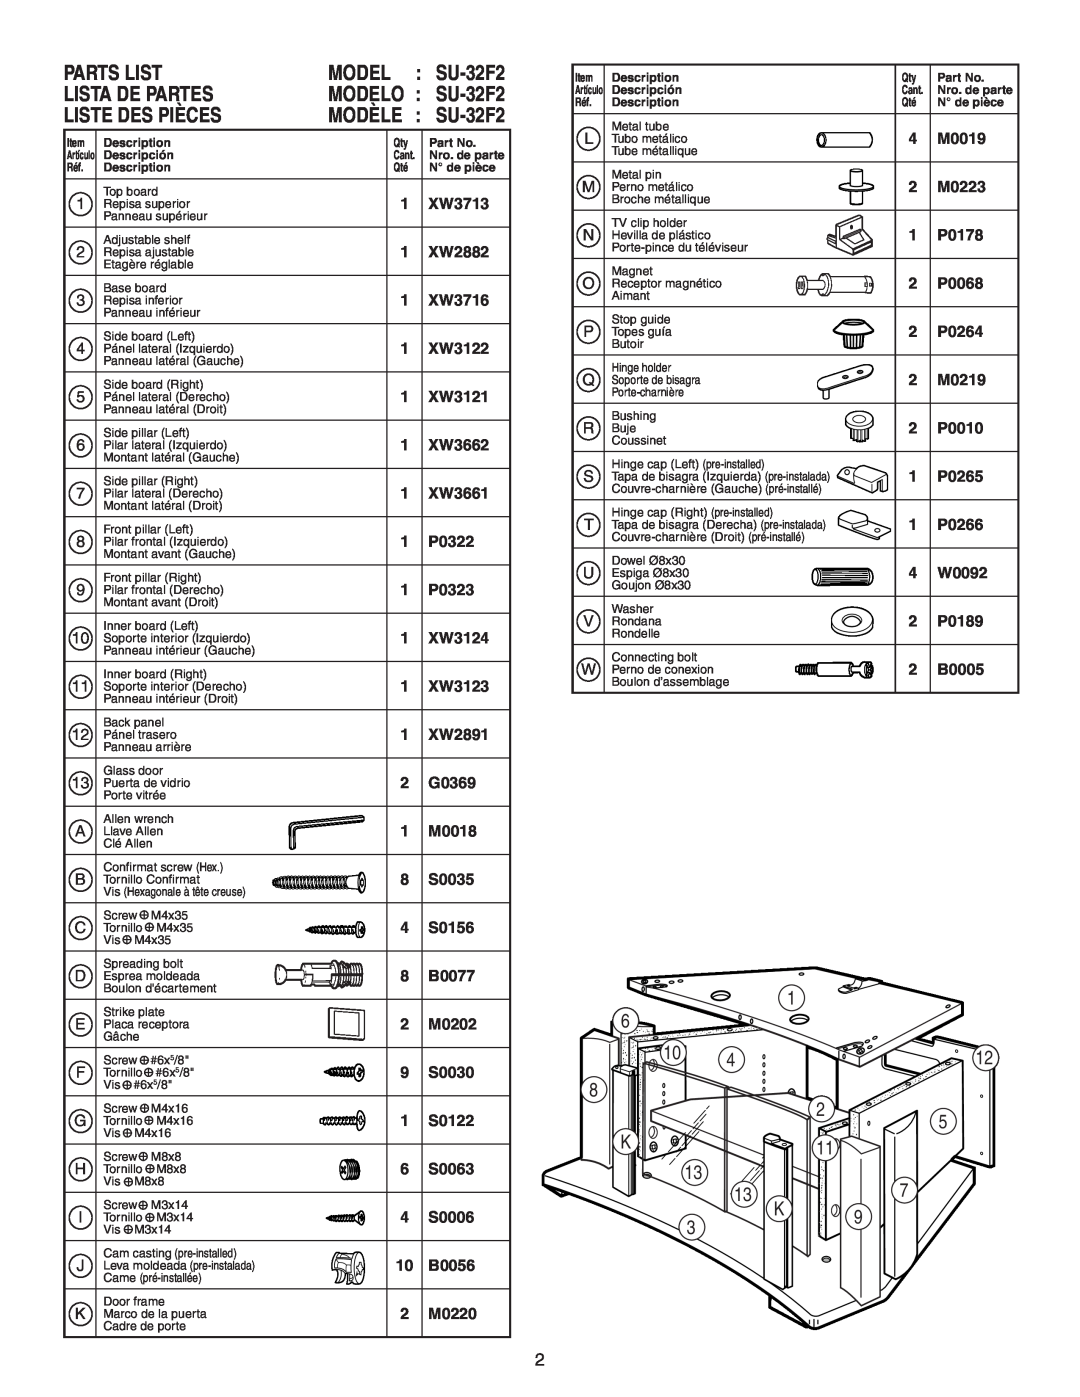 Sony manual Parts List, Model, Lista De Partes, Liste Des Pièces, 6 10 8 K 13 13 K, MODELO SU-32F2, MODÈLE SU-32F2 